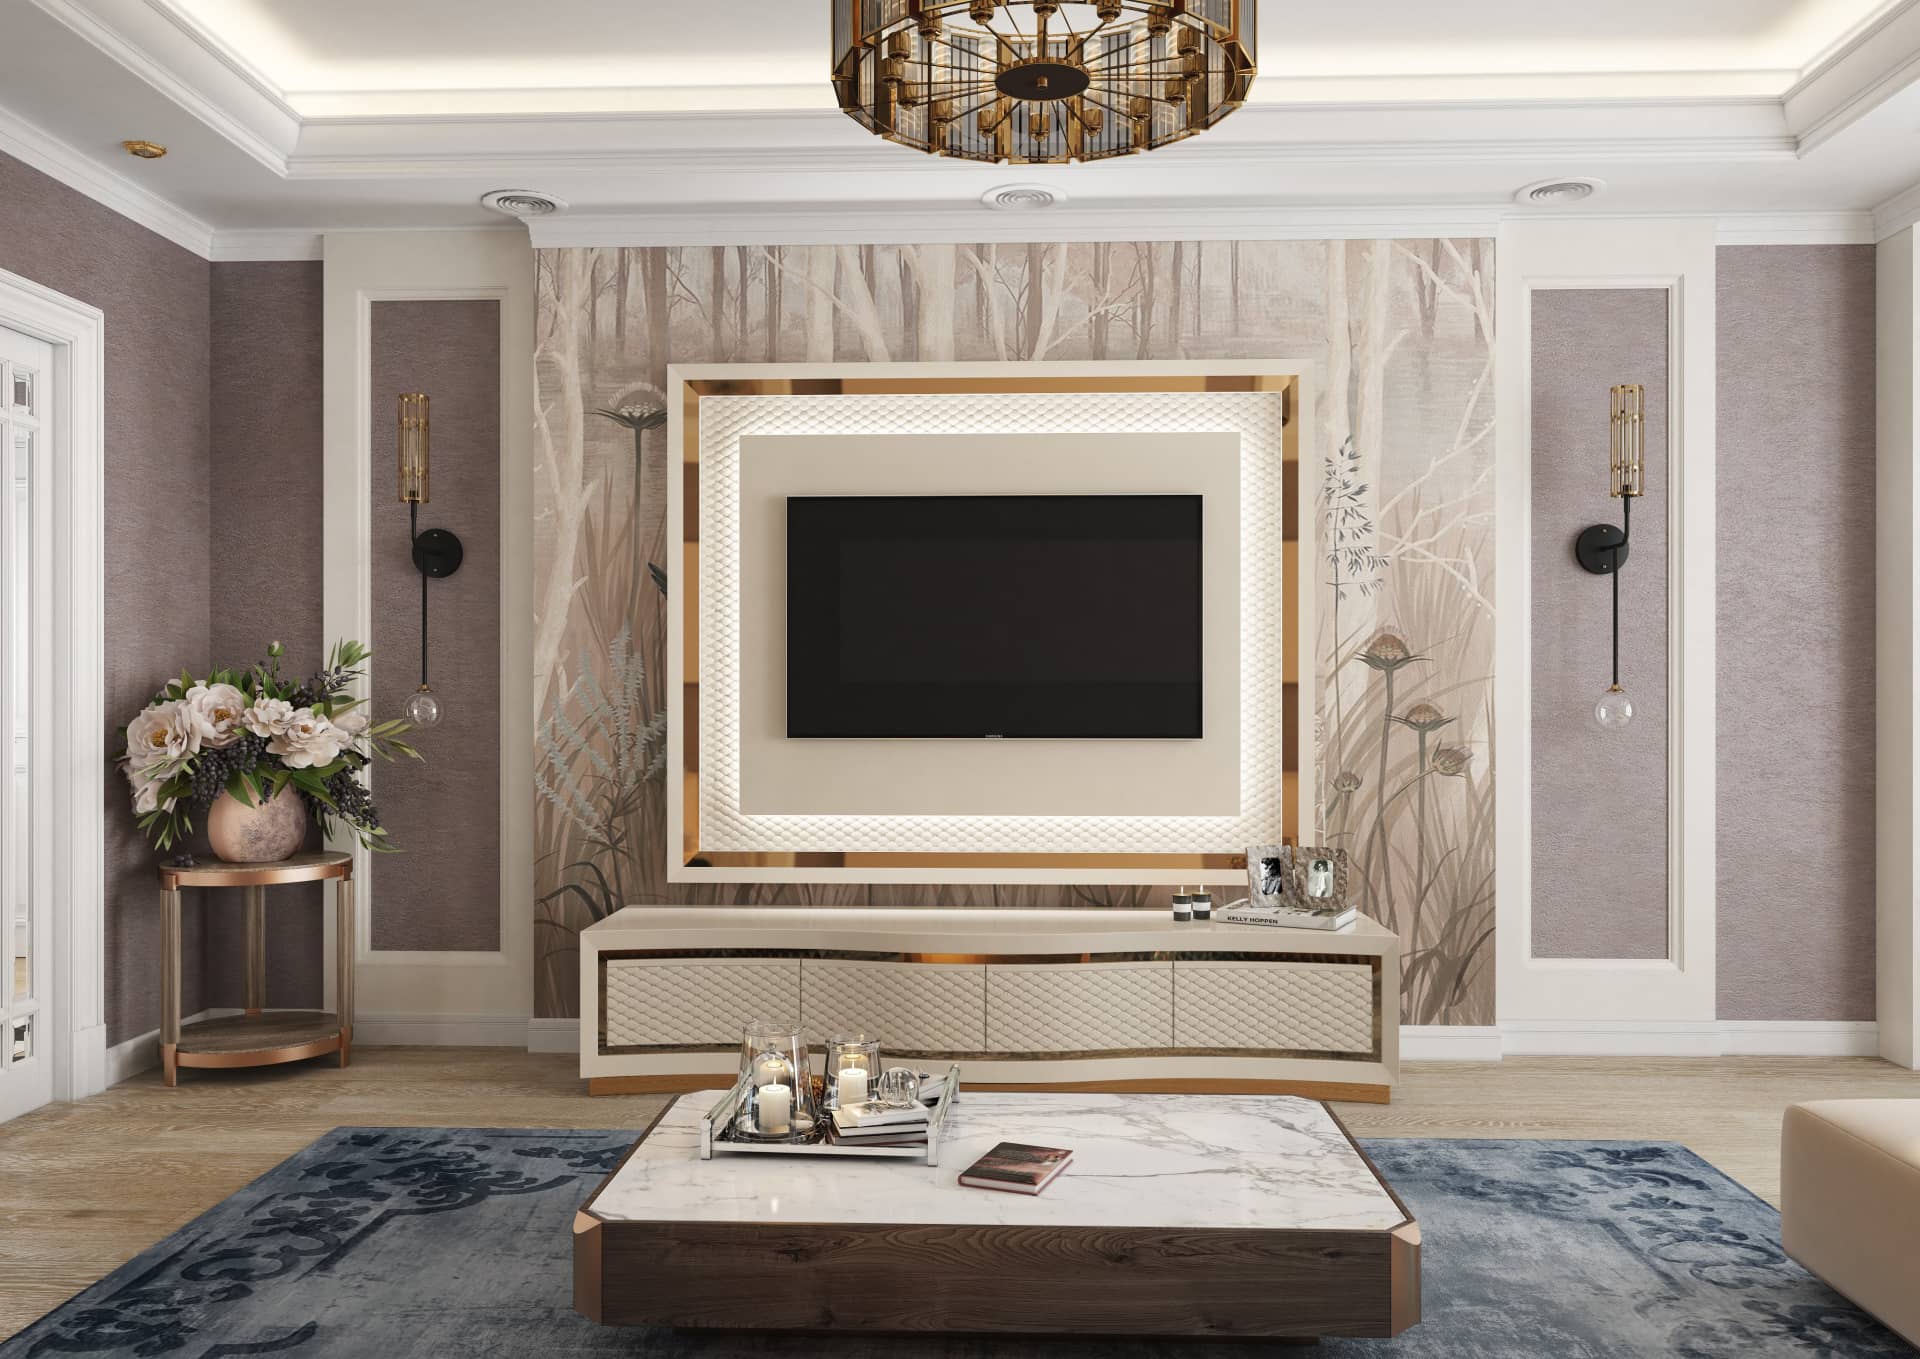 Оформление интерьера гостиной трехкомнатной квартиры в коричневый цвет в стиле современной классики. Фото № 56580.